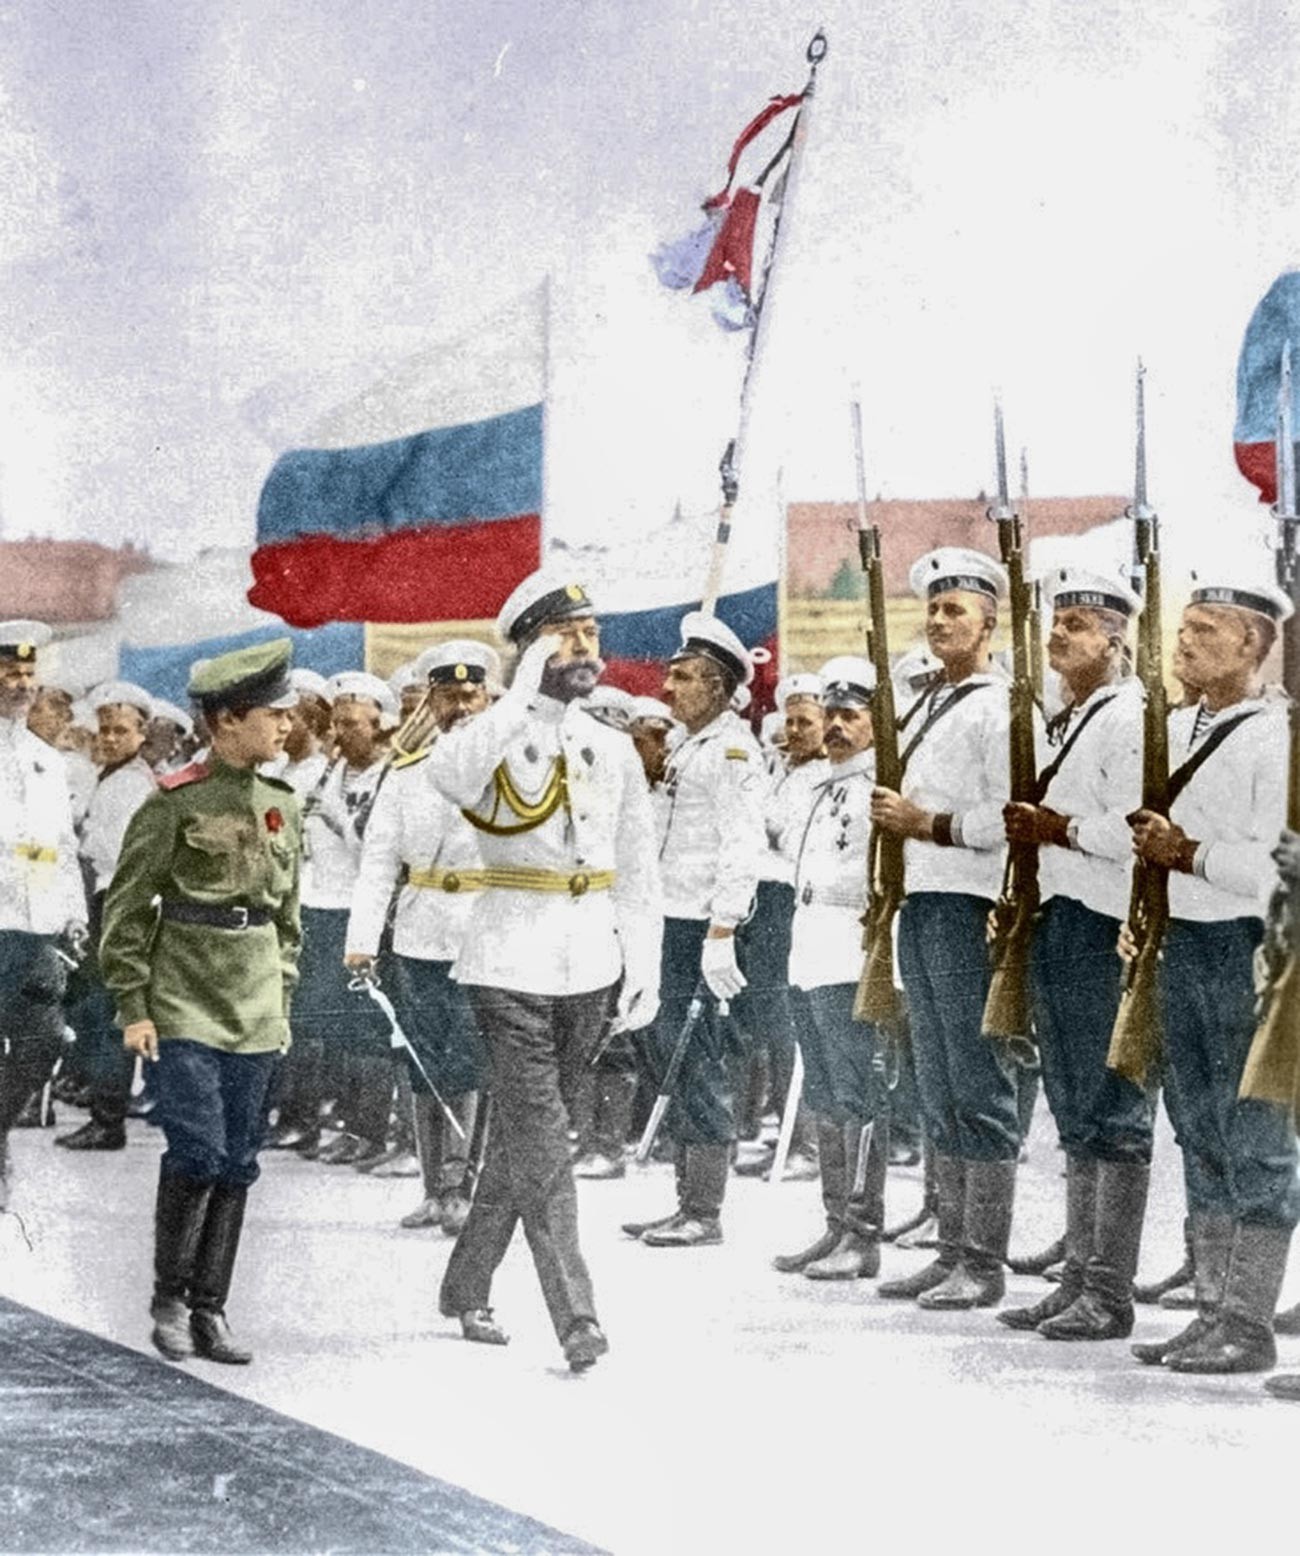 Le 12 mai (29 avril selon le calendrier julien) 1896, Nicolas II a officiellement établi le drapeau blanc-bleu-rouge.
